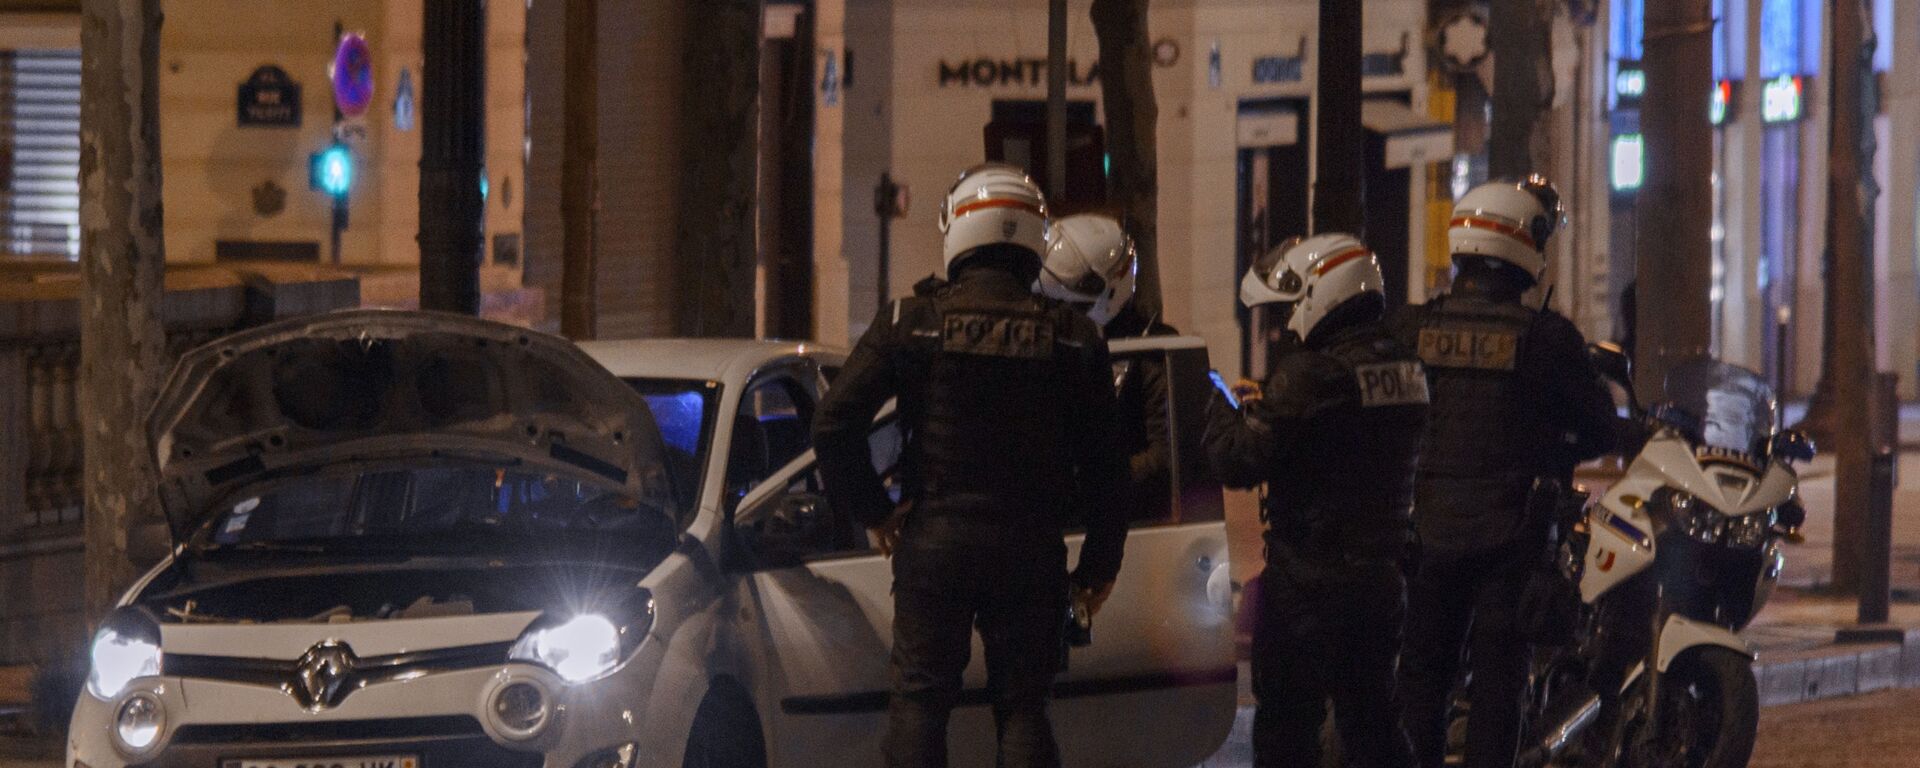 Полицейские досматривают автомобиль во время комендантского часа в Париже - Sputnik Молдова, 1920, 07.03.2021